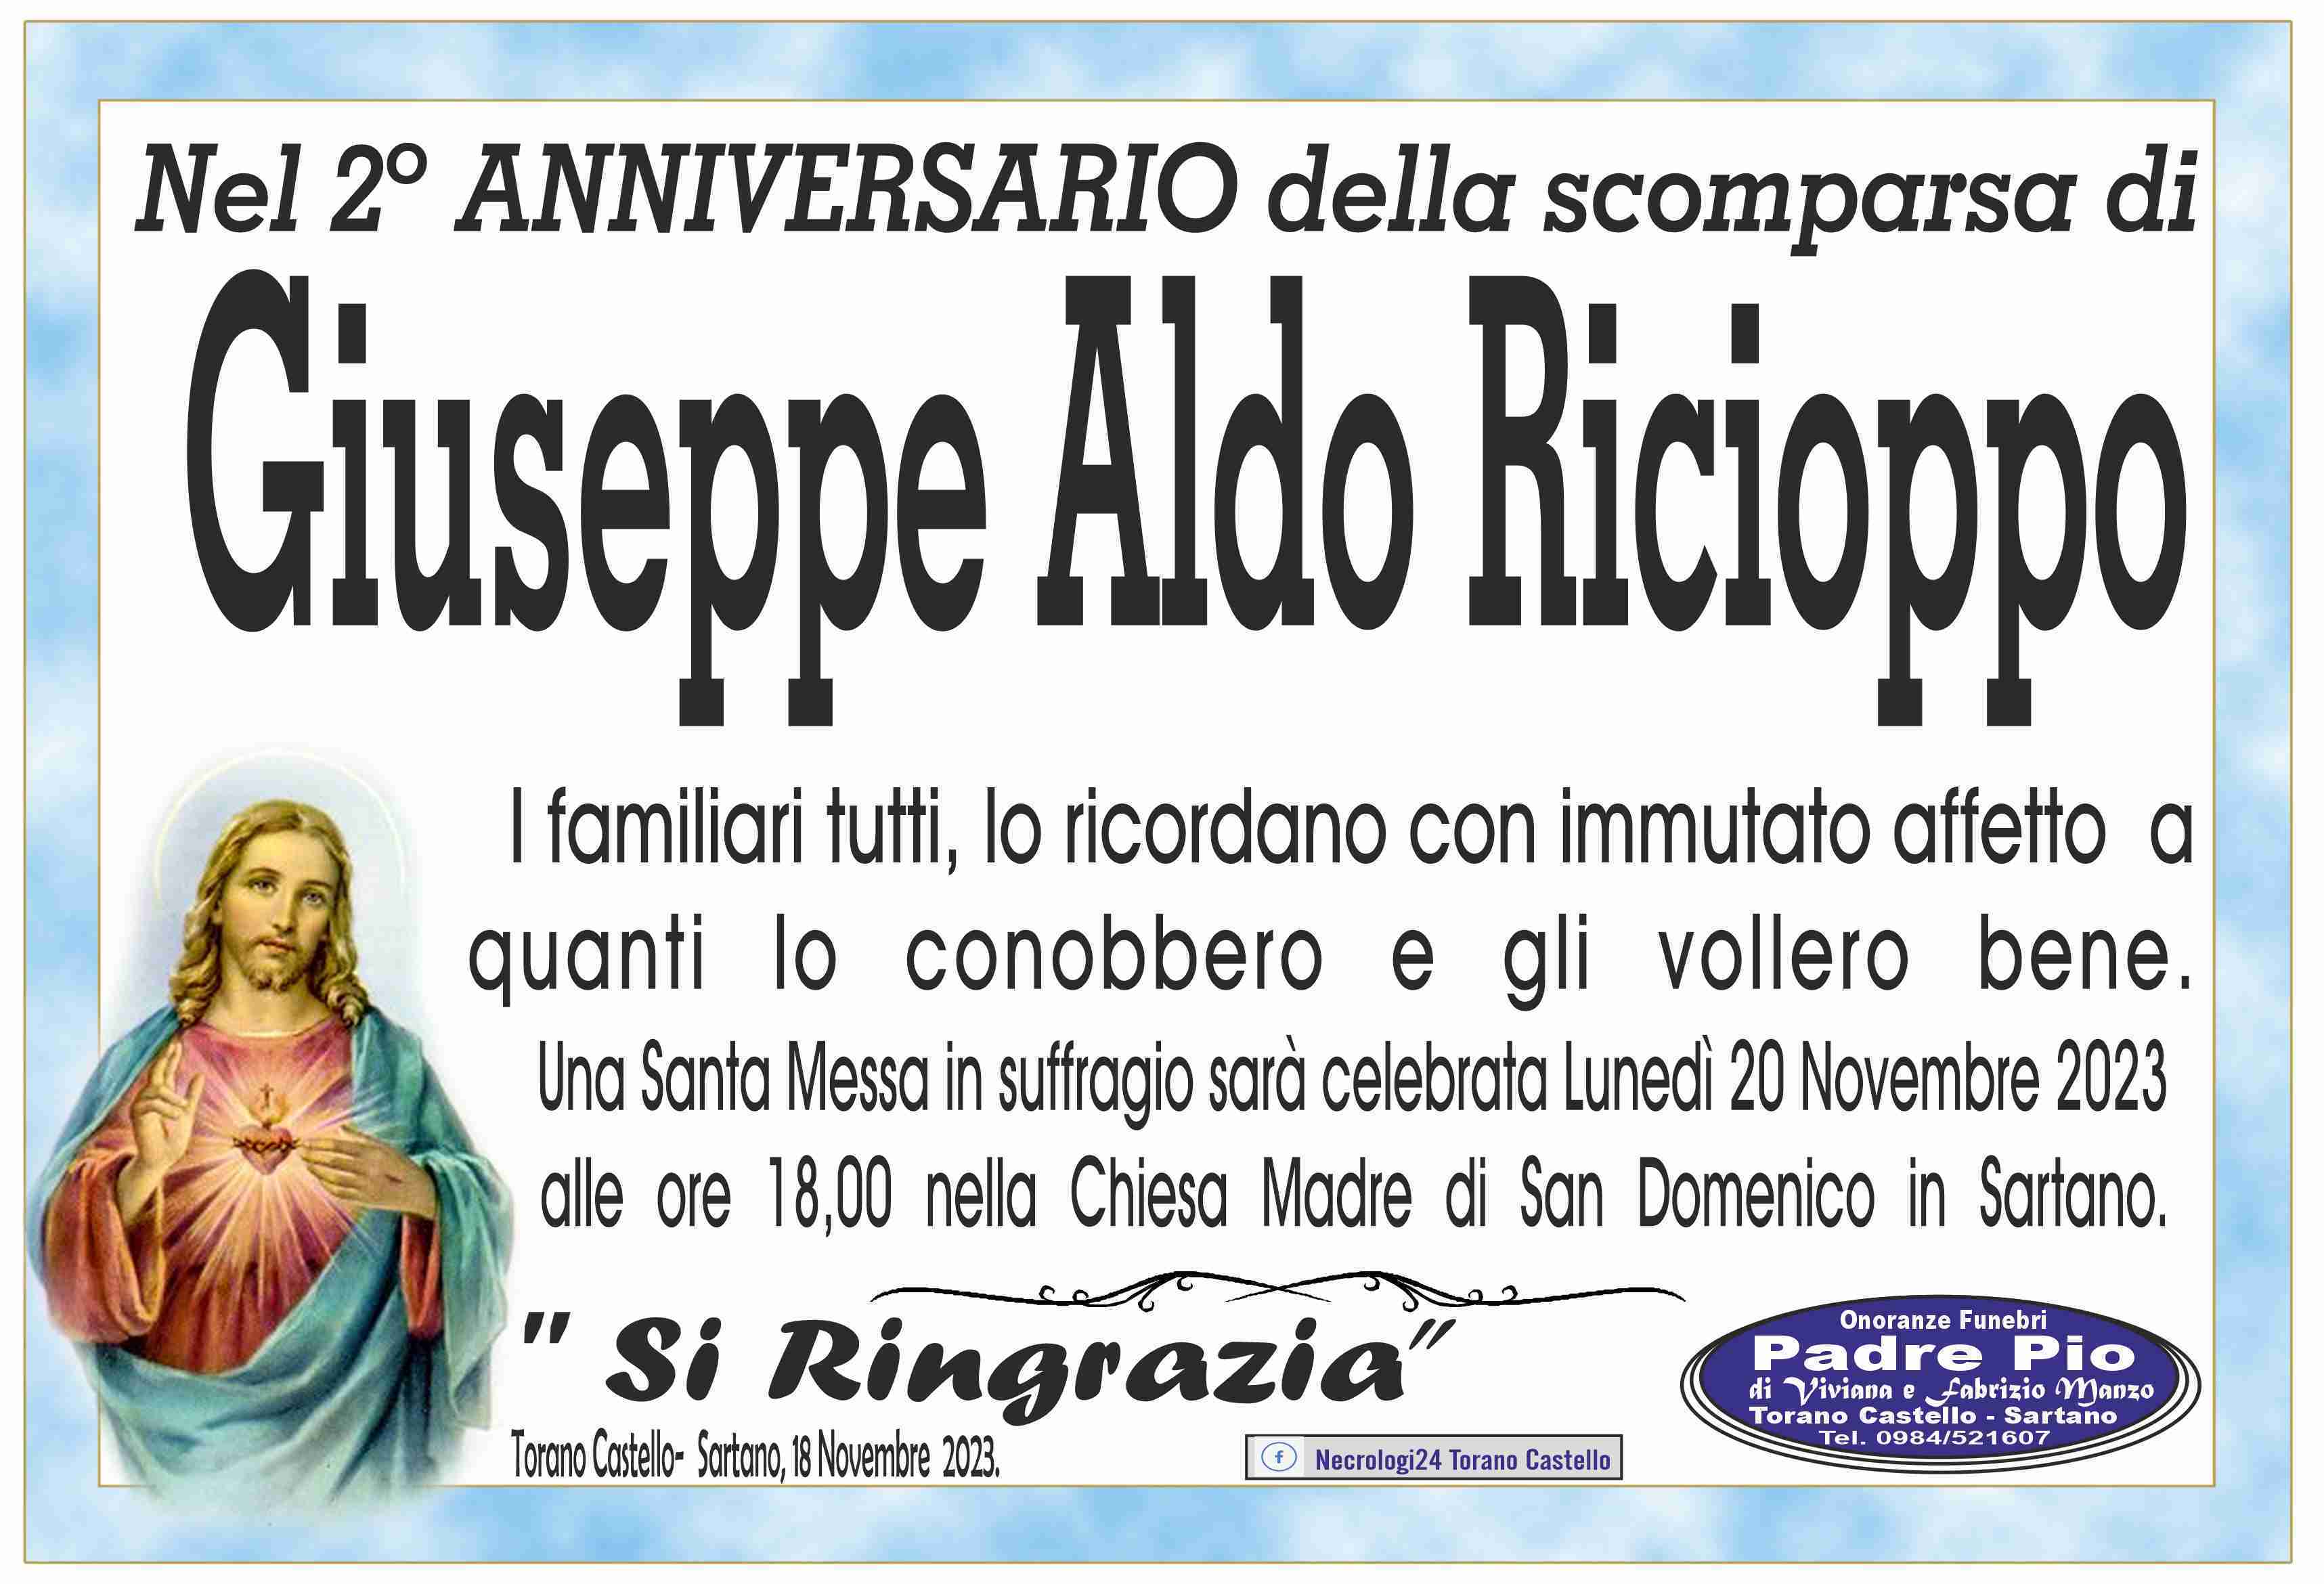 Giuseppe Aldo Ricioppo